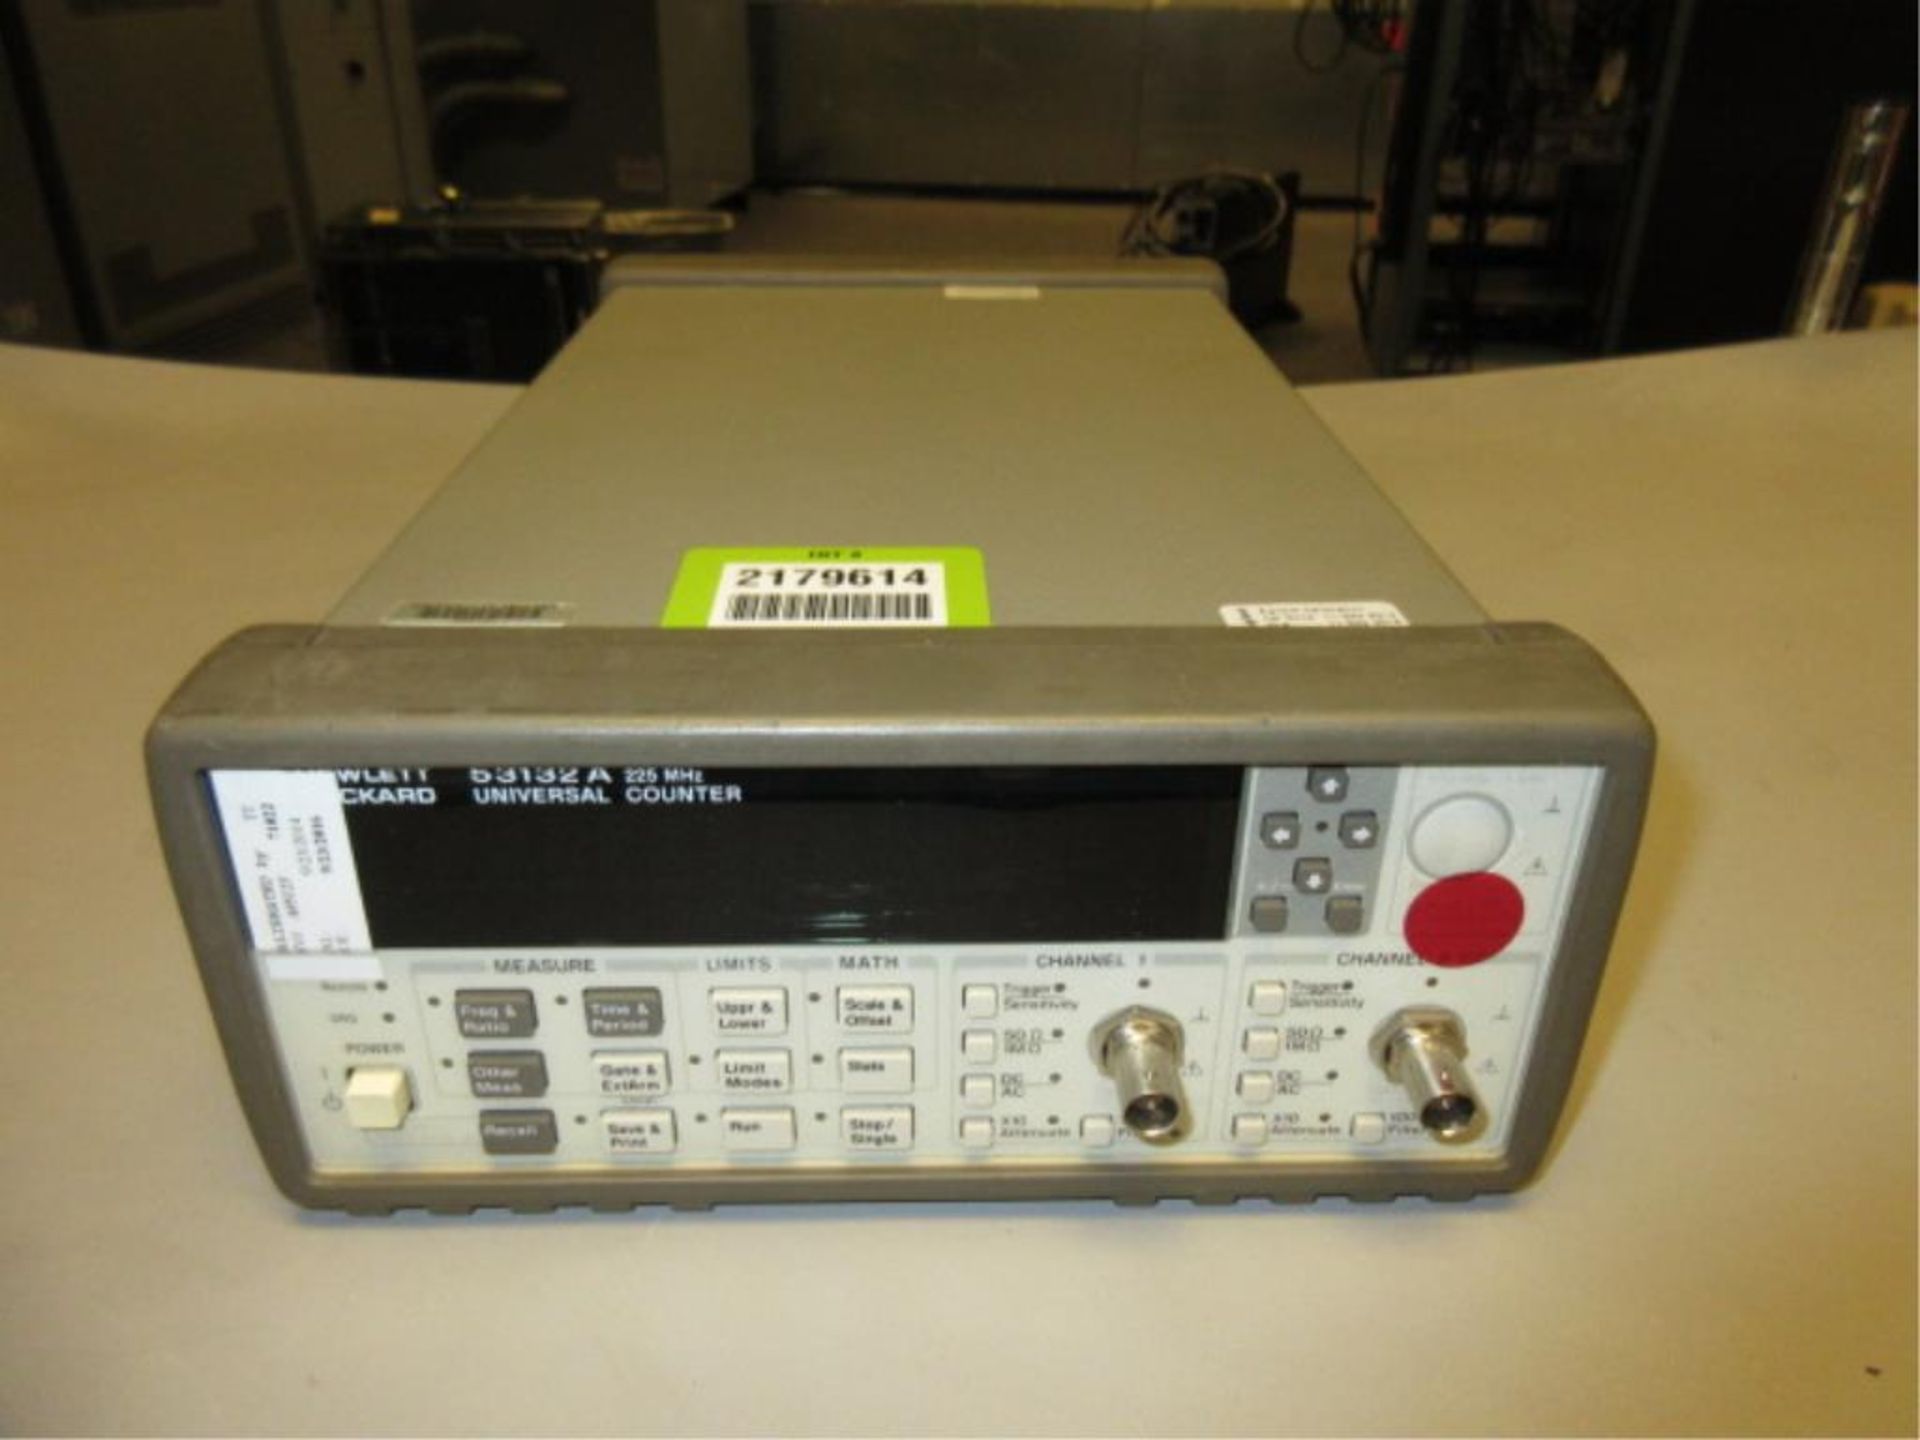 Hewlett Packard 53132A Universal Counter. Universal Counter, 225 MHz, 100-240v. SN# 3404A00275.